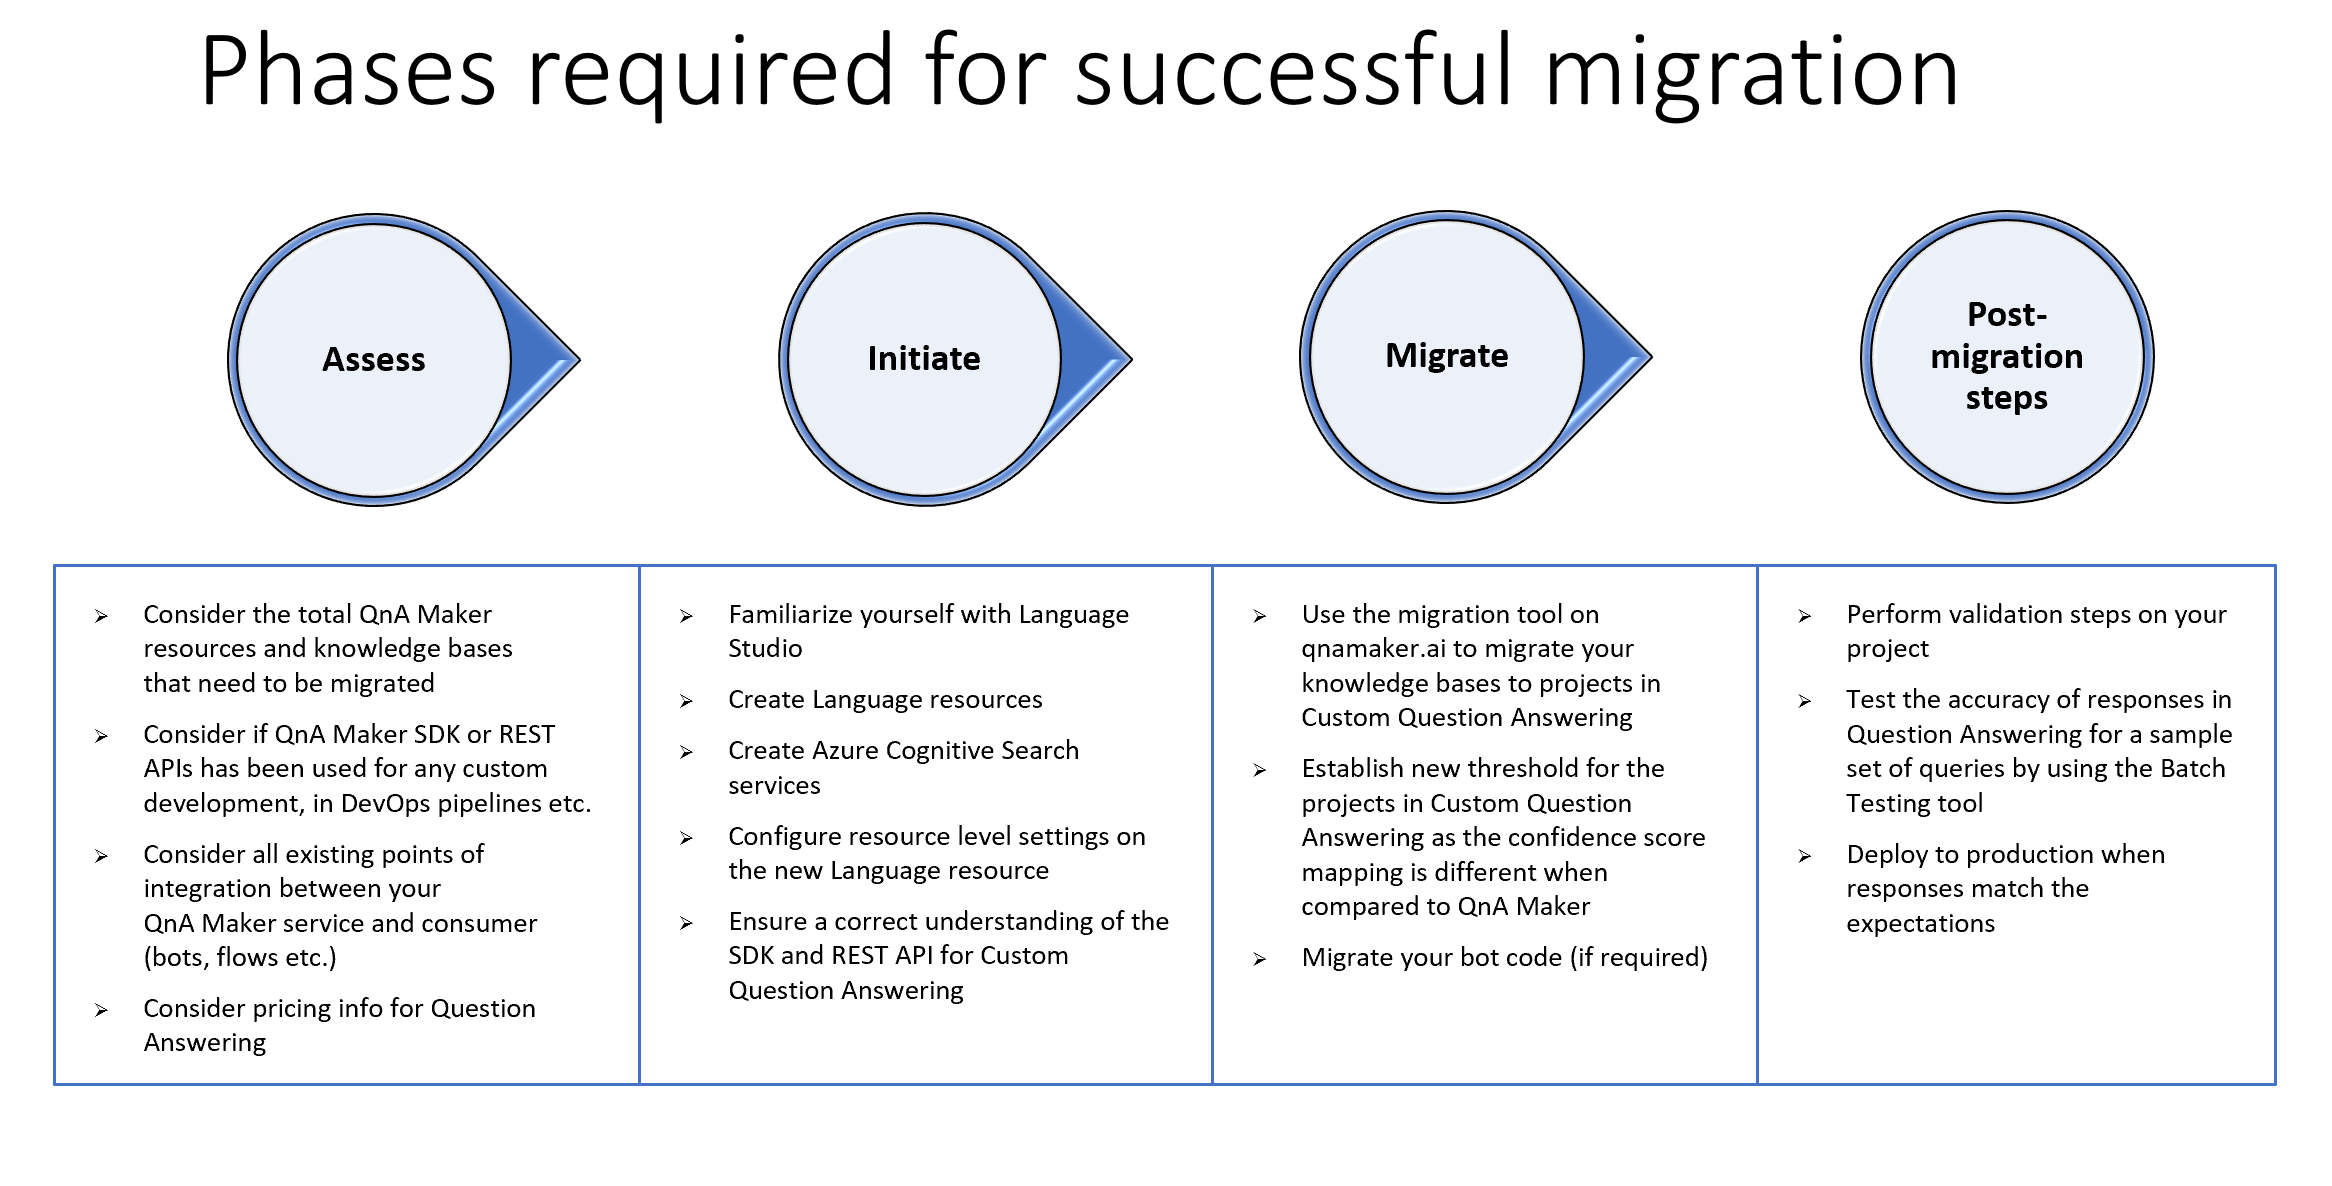 Graf znázorňující fáze úspěšné migrace